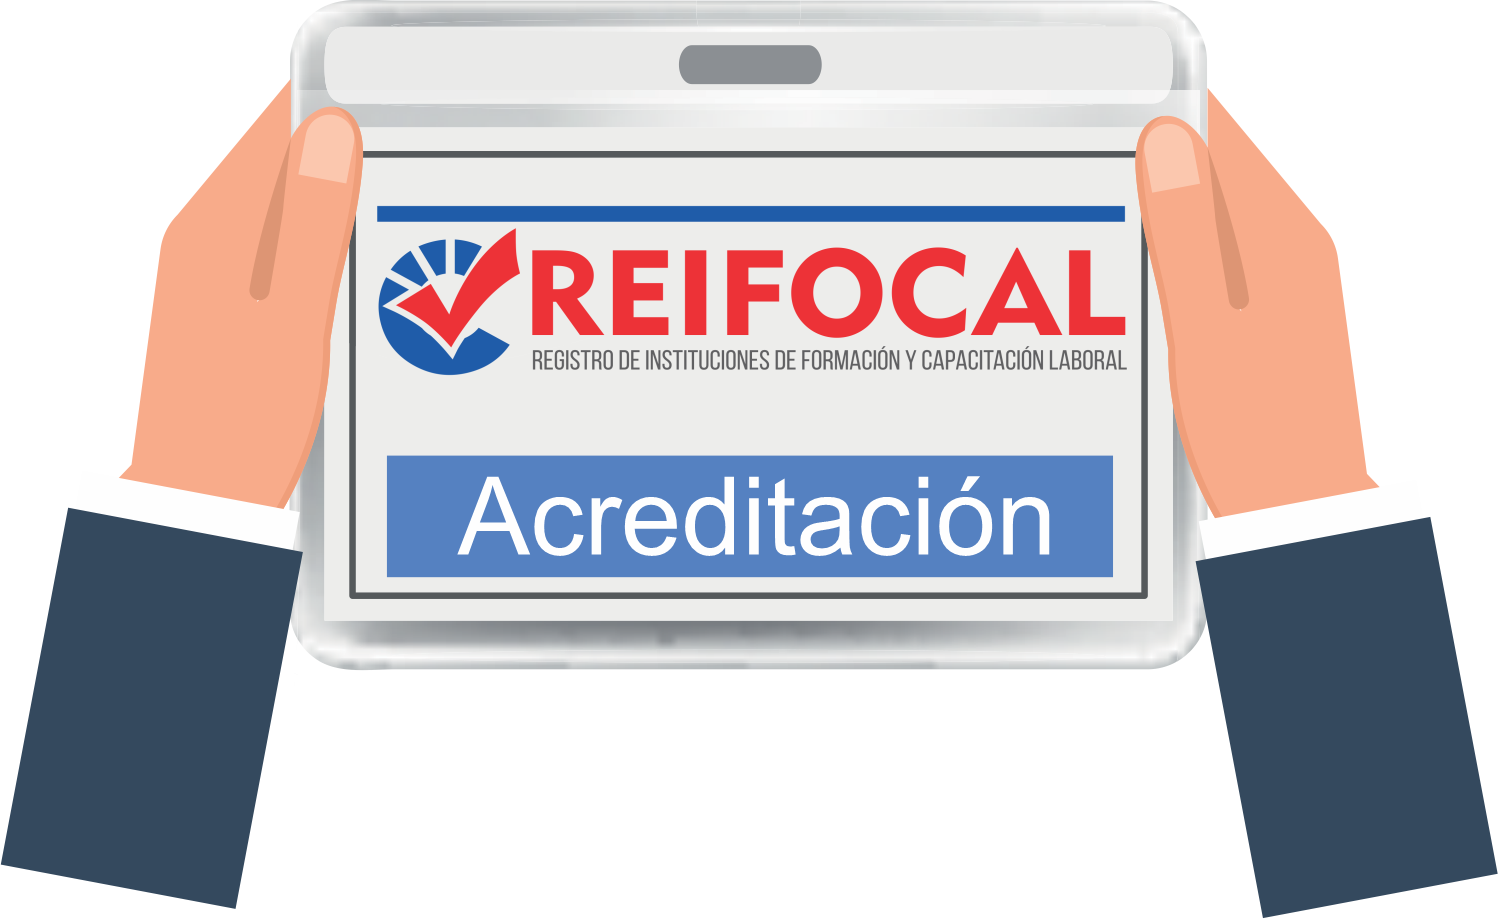 acreditacion_reifocal.png